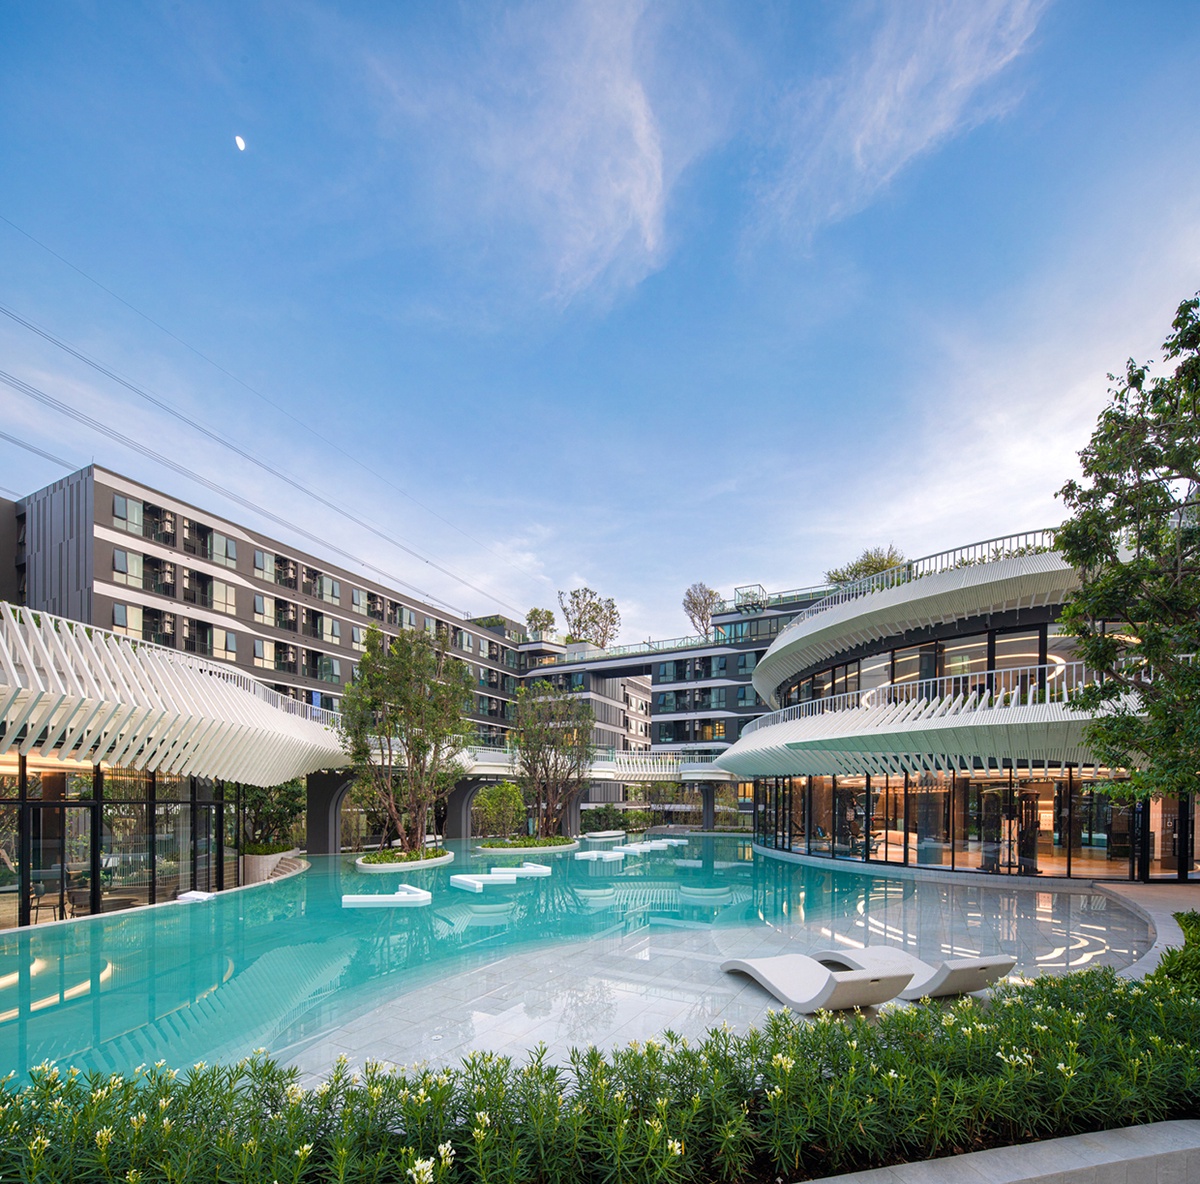 แอสเซทไวส์ ตอกย้ำความสำเร็จ ส่ง เคฟ เอวา (Kave Ava) คว้ารางวัล PropertyGuru Thailand Property Awards 2022 ในสาขา Best Affordable Condo Development (Bangkok) ต่อเนื่อง 2 ปีซ้อน